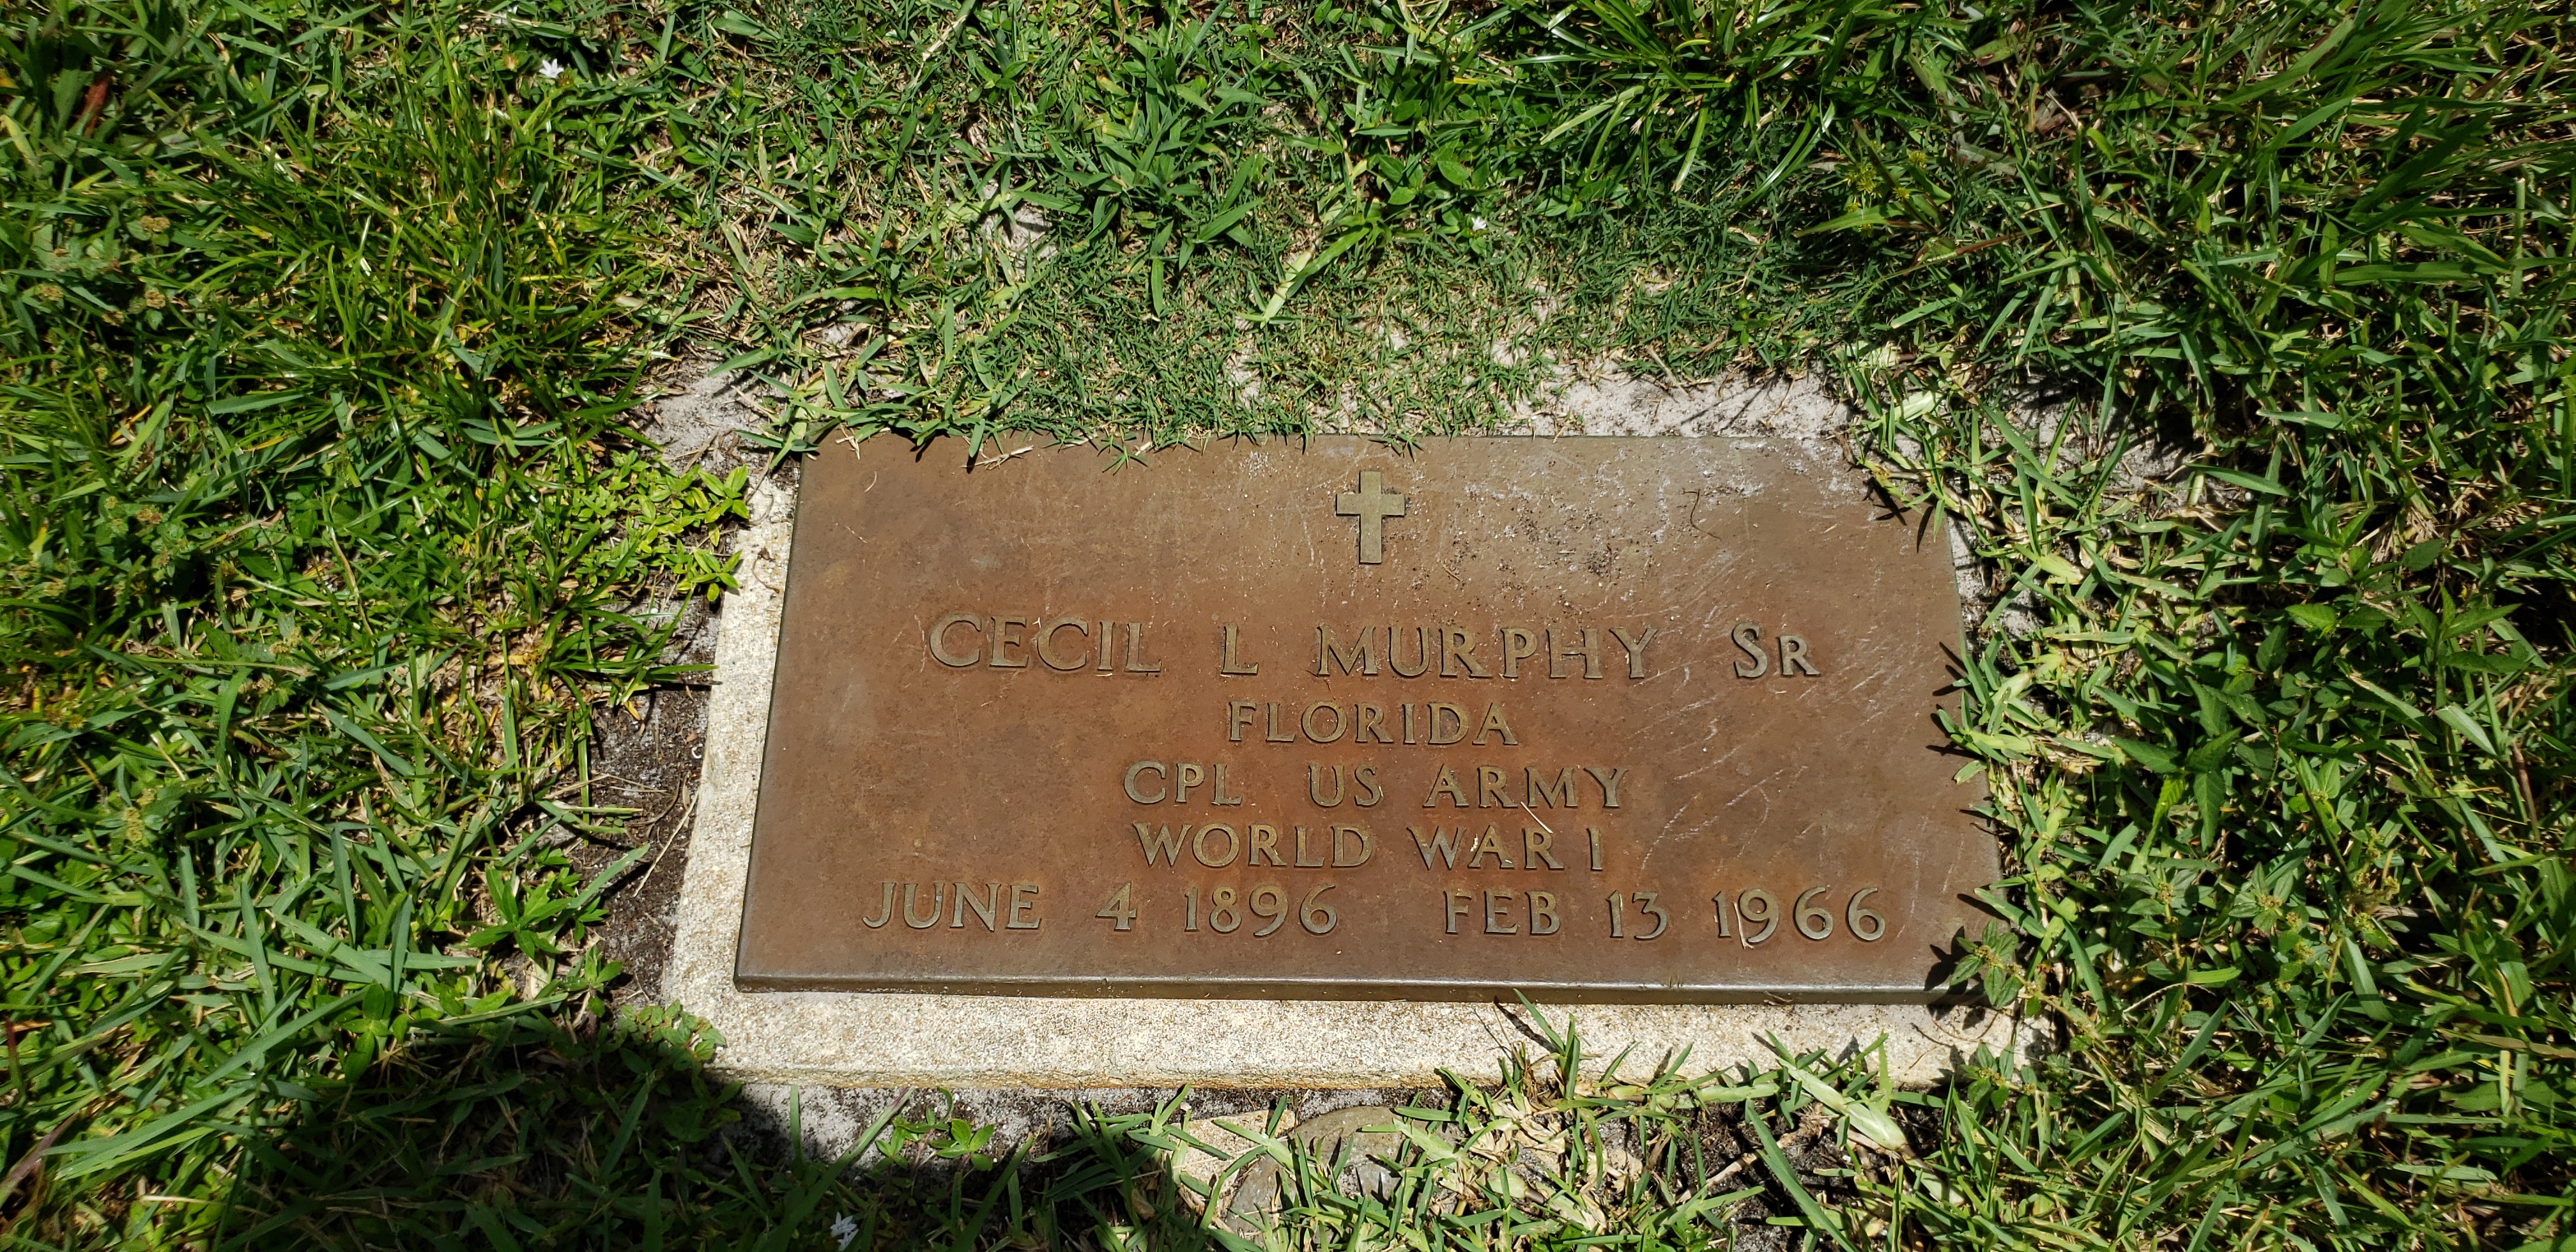 Cecil L Murphy, Sr